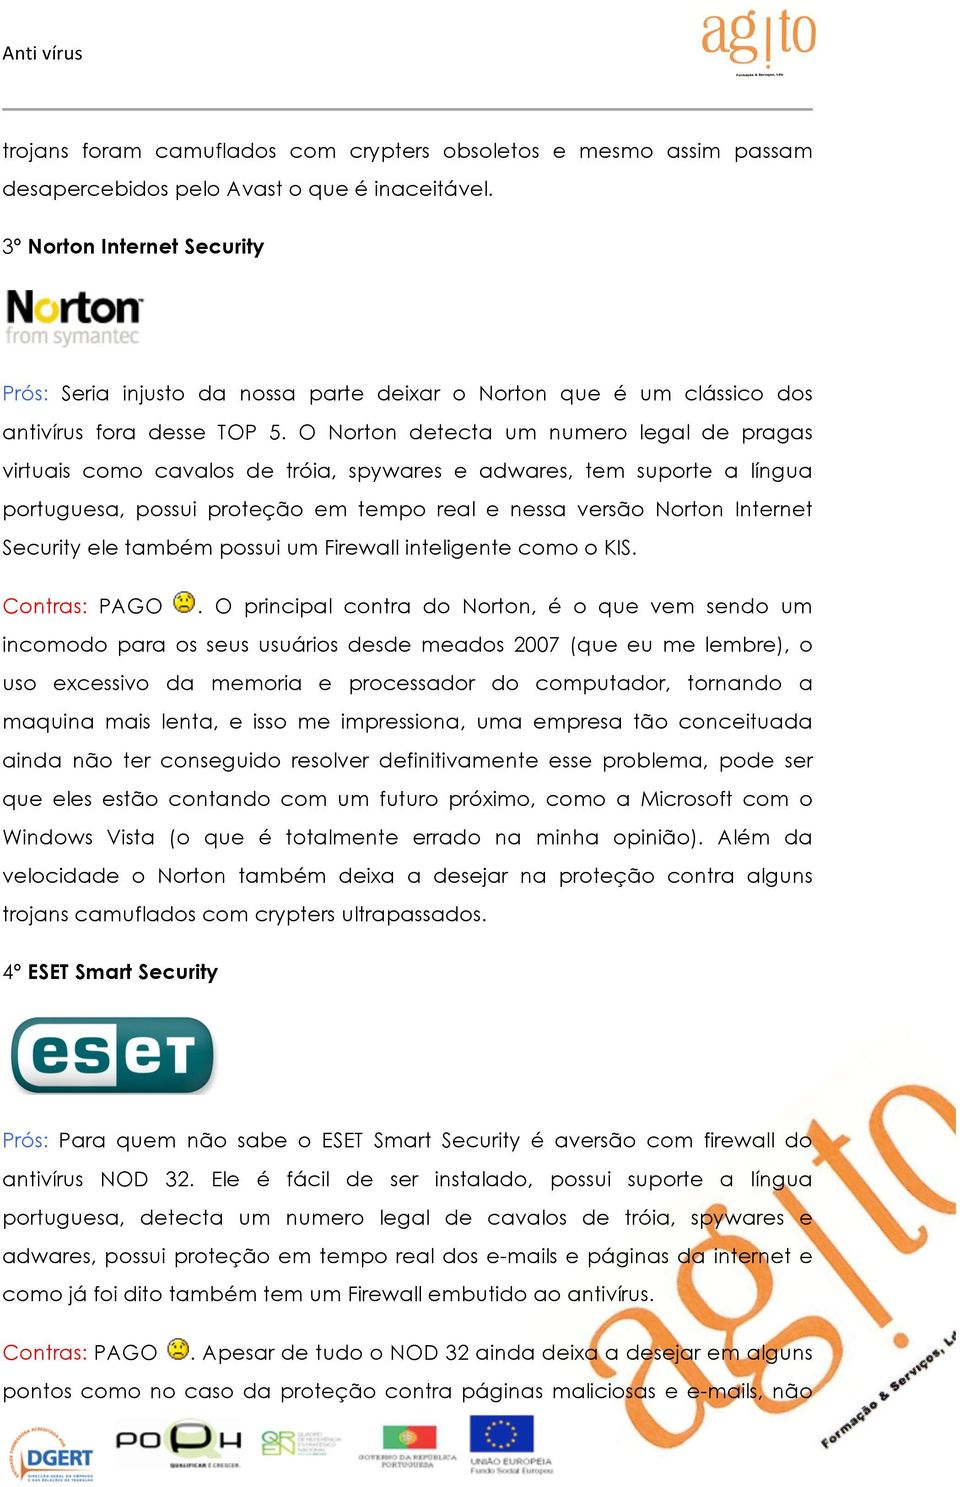 O Norton detecta um numero legal de pragas virtuais como cavalos de tróia, spywares e adwares, tem suporte a língua portuguesa, possui proteção em tempo real e nessa versão Norton Internet Security